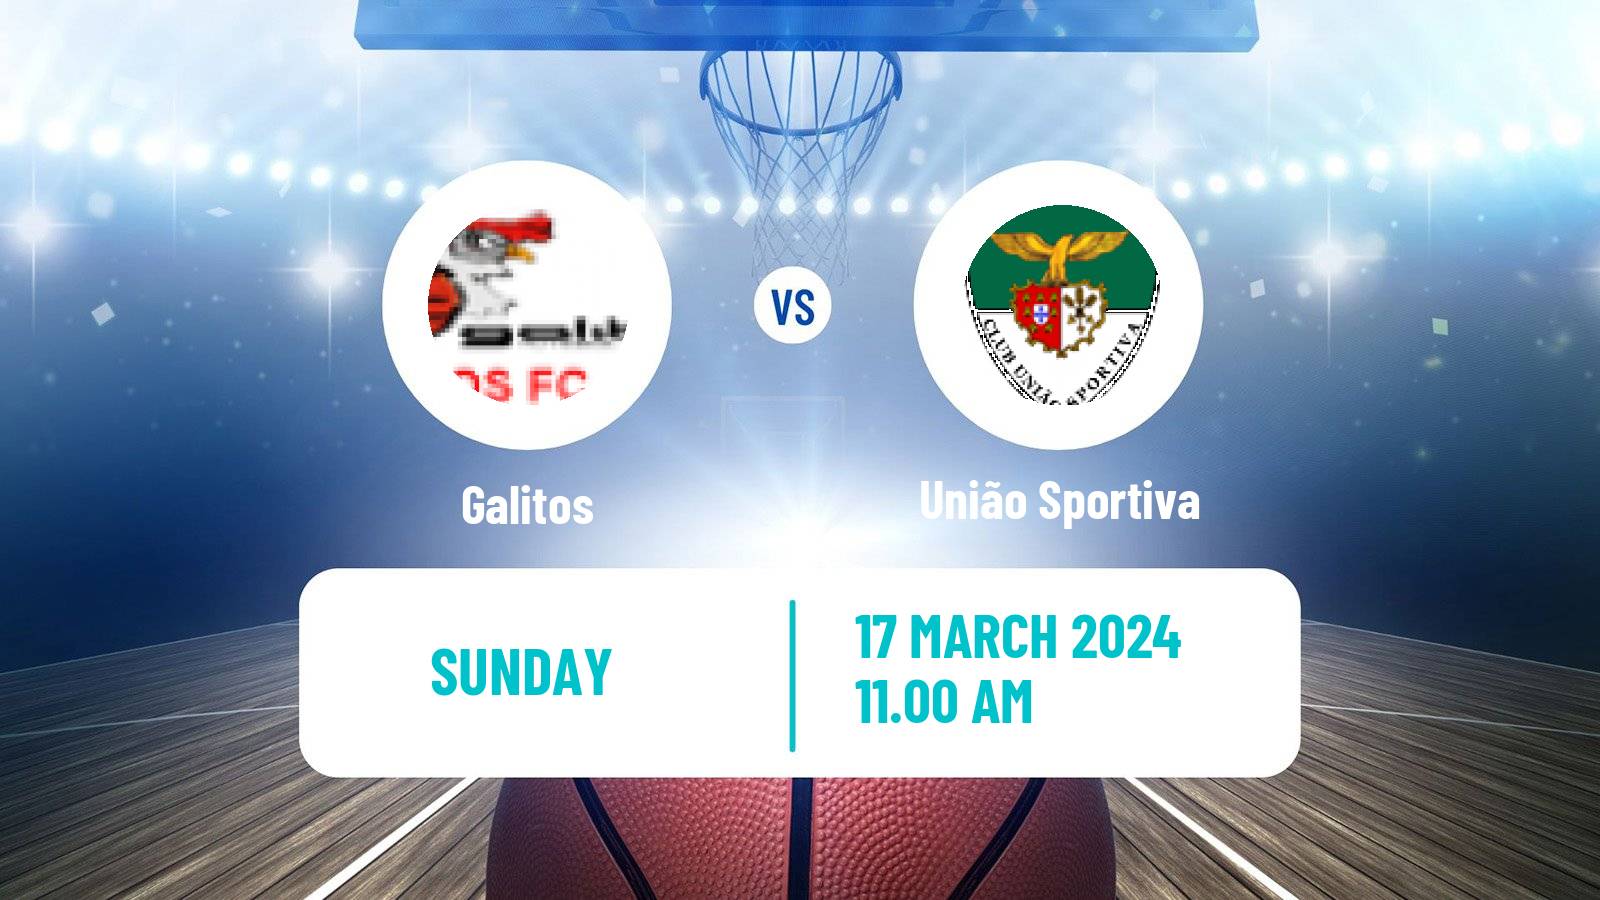 Basketball Portuguese LFB Galitos - União Sportiva